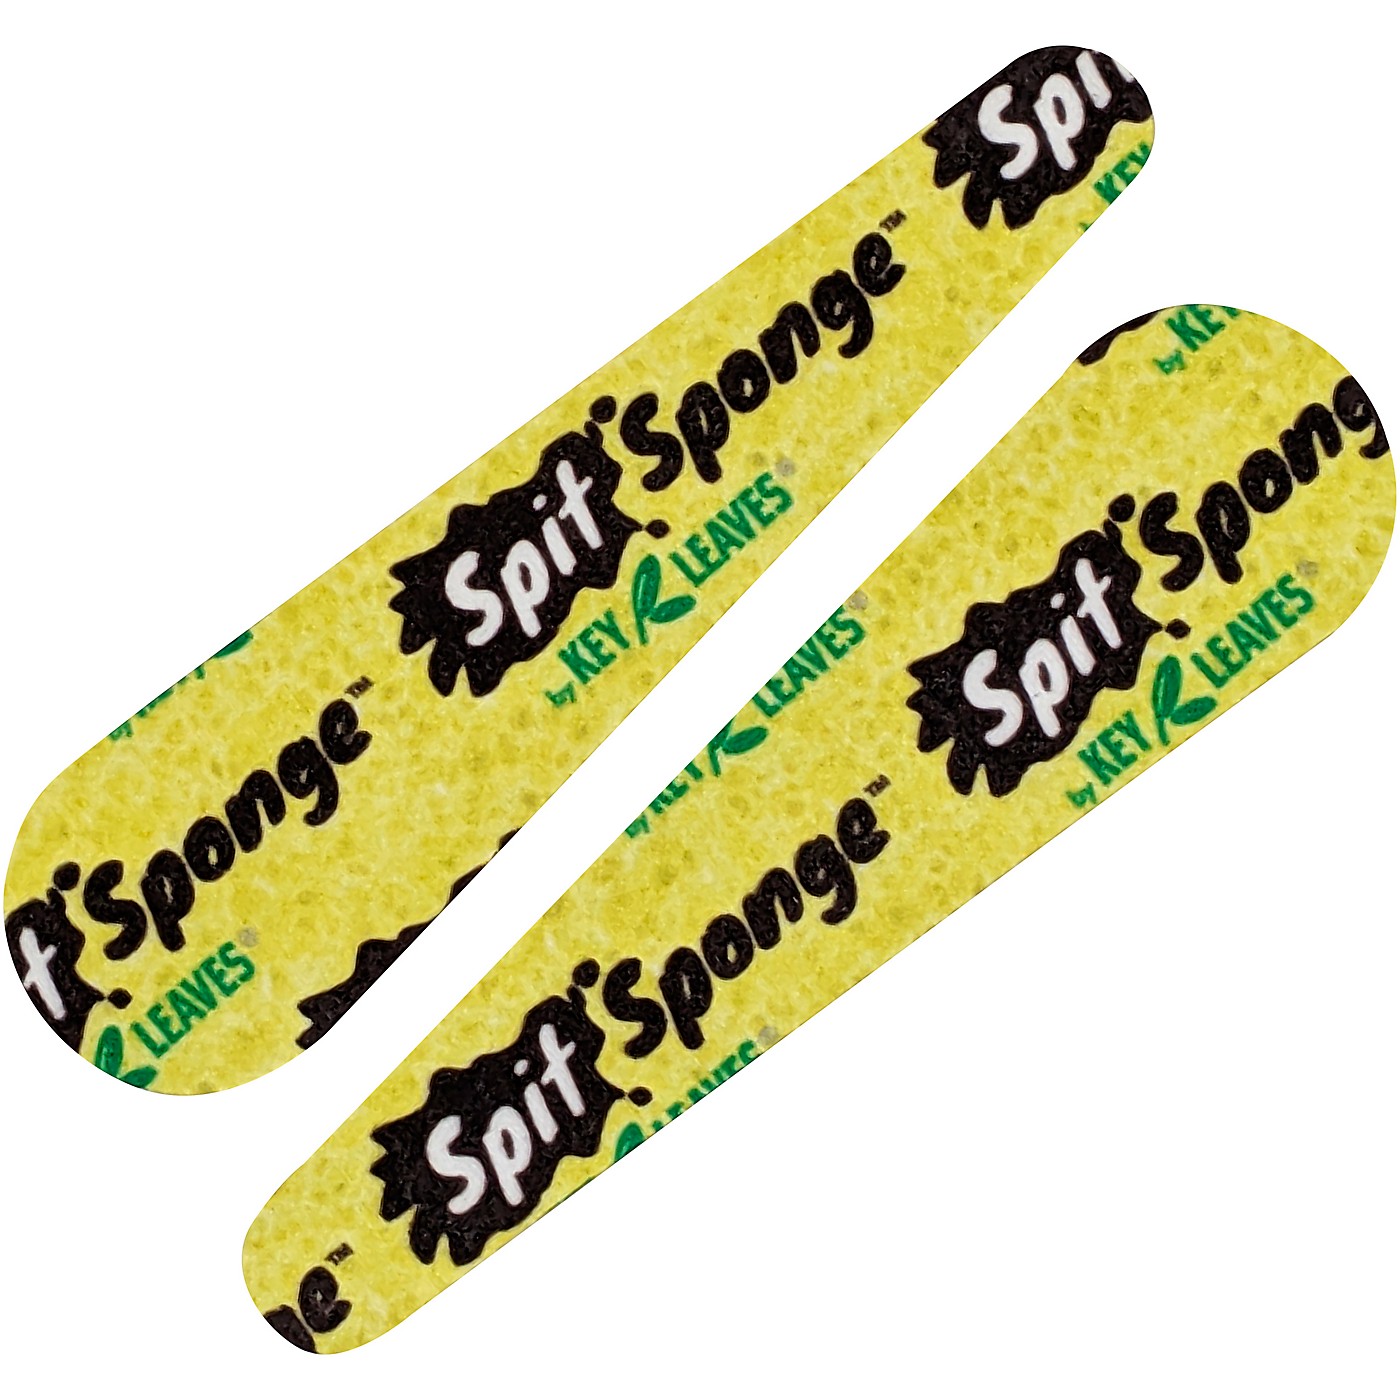 Key Leaves Spit Sponge Woodwind Size Pad Dryer, 2 Piece thumbnail